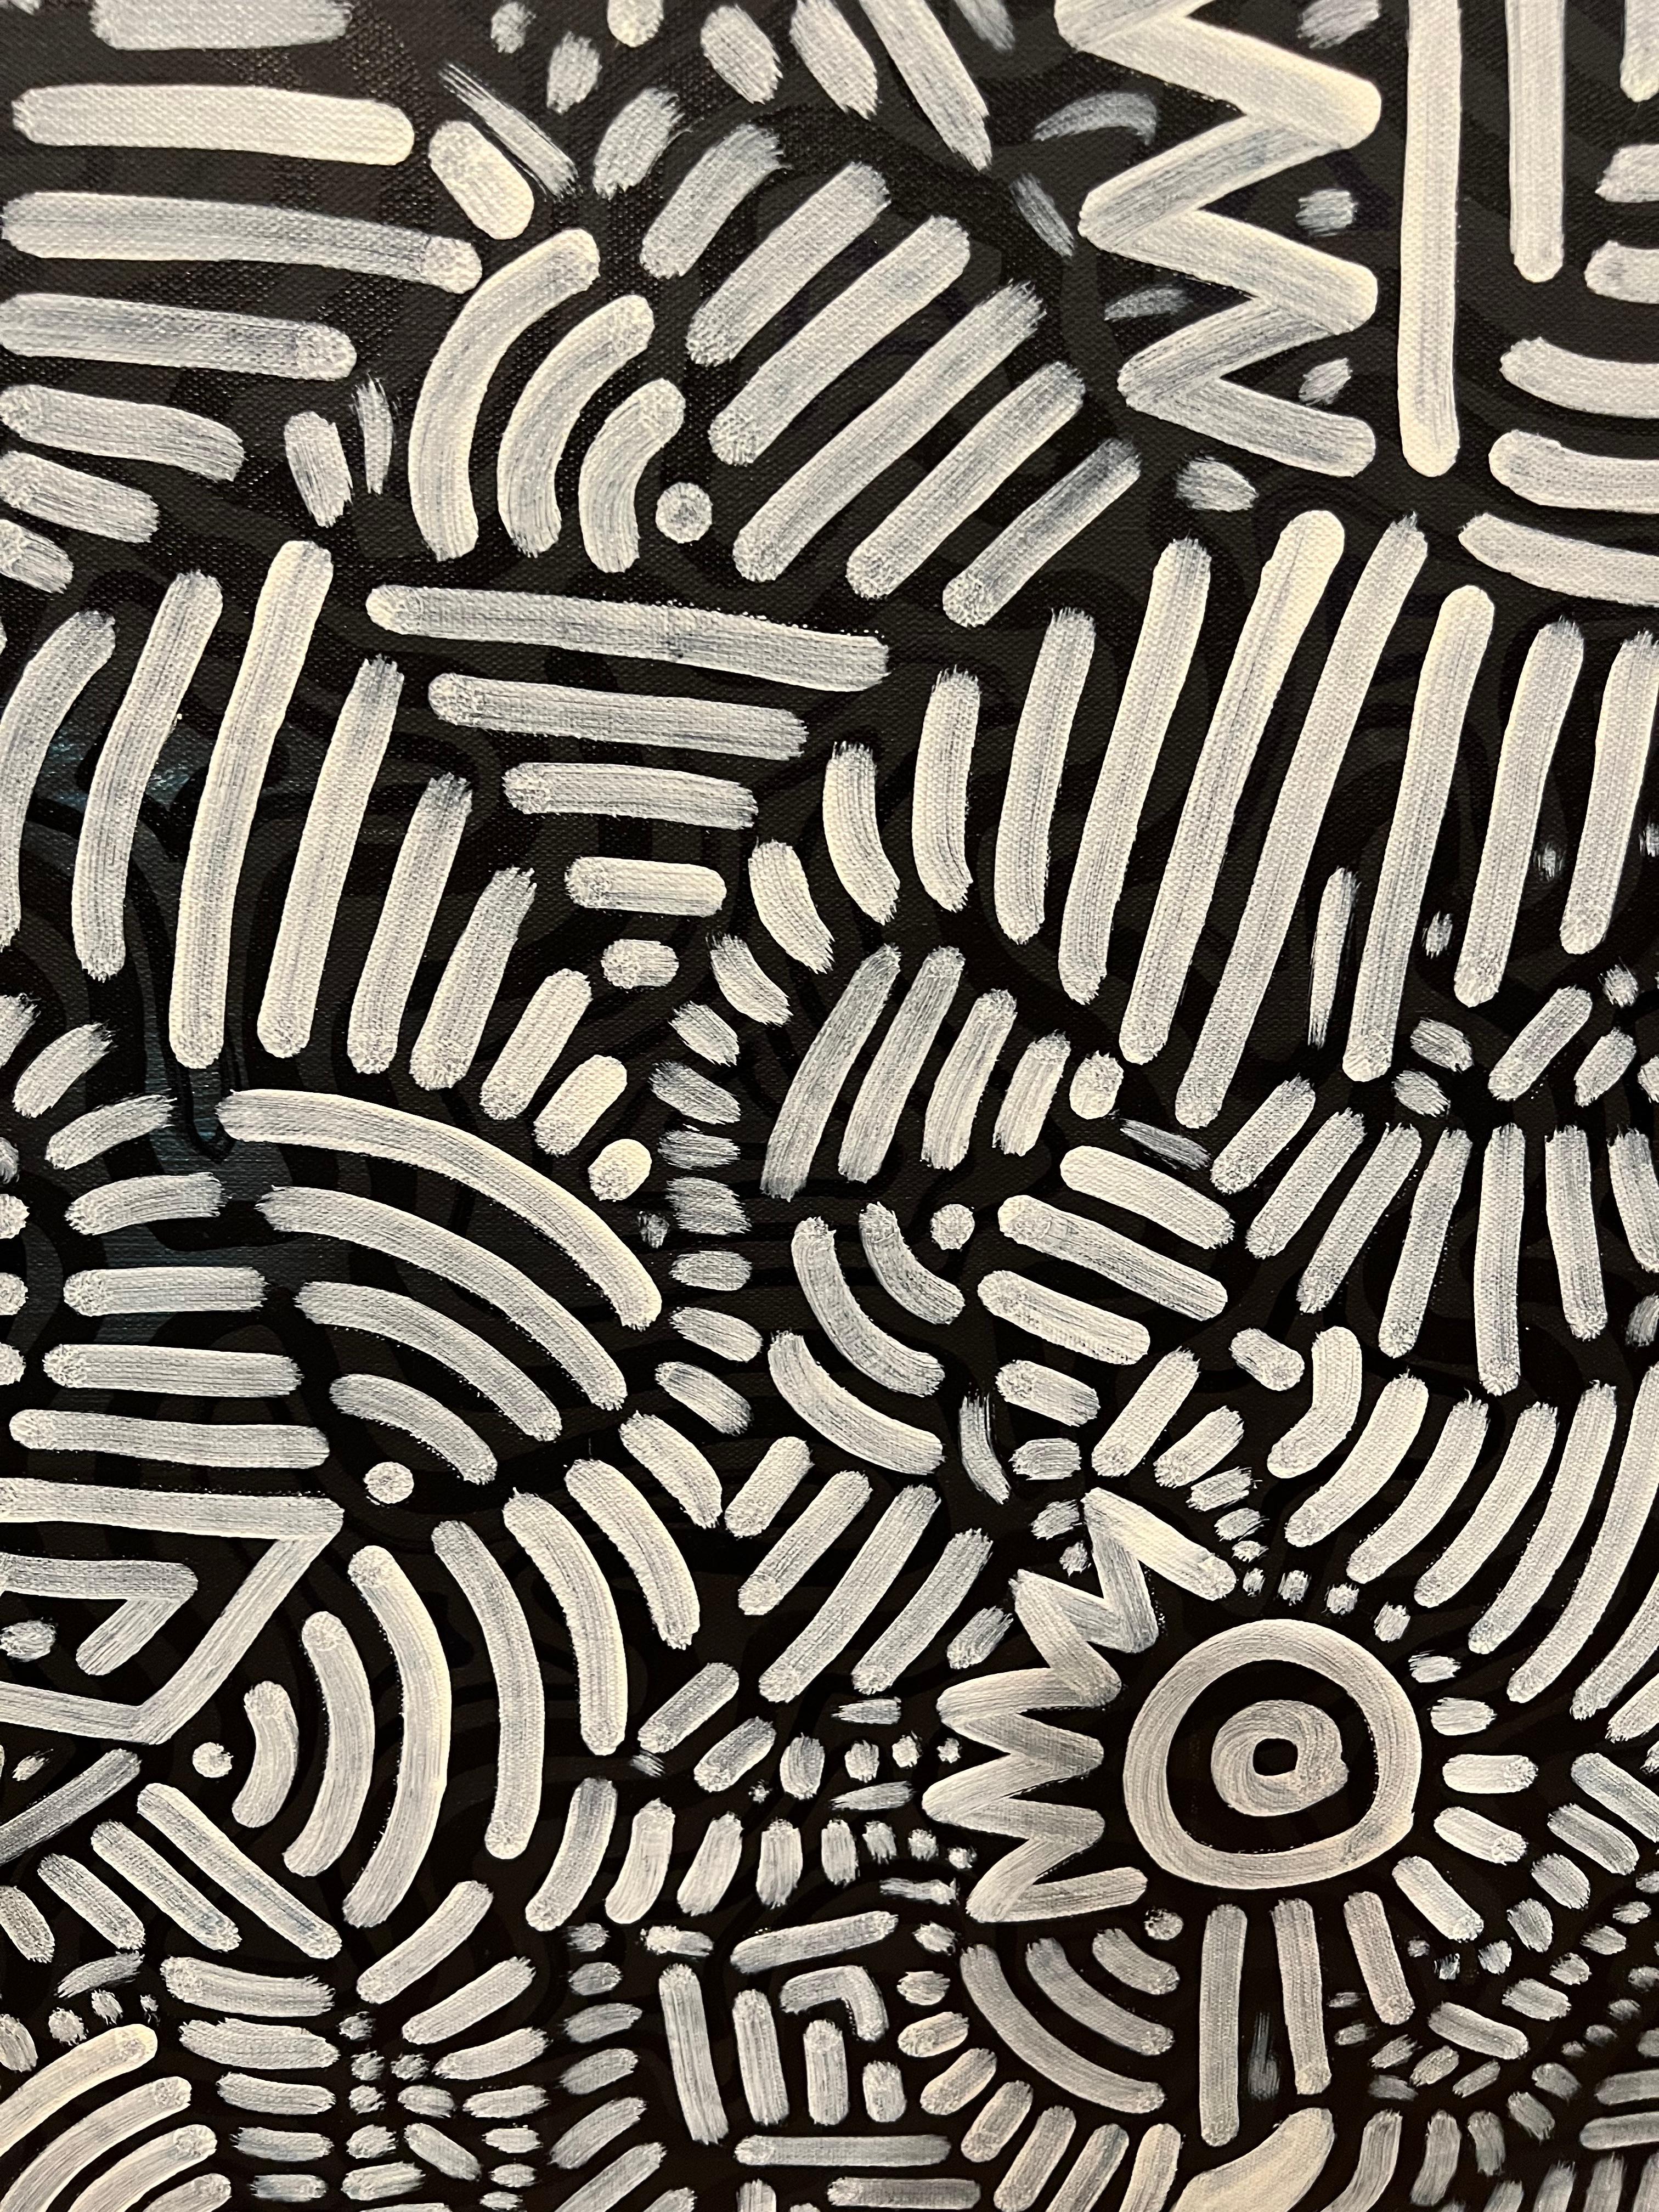 Zeitgenössisches abstraktes geometrisches Gemälde in Schwarz-Weiß, das mit Acryl und UV-reaktiven Acryl-Akzenten als einzigartigem Überraschungseffekt geschaffen wurde. 
Dieser Künstler lässt sich von dem großen Keith Haring inspirieren und schafft